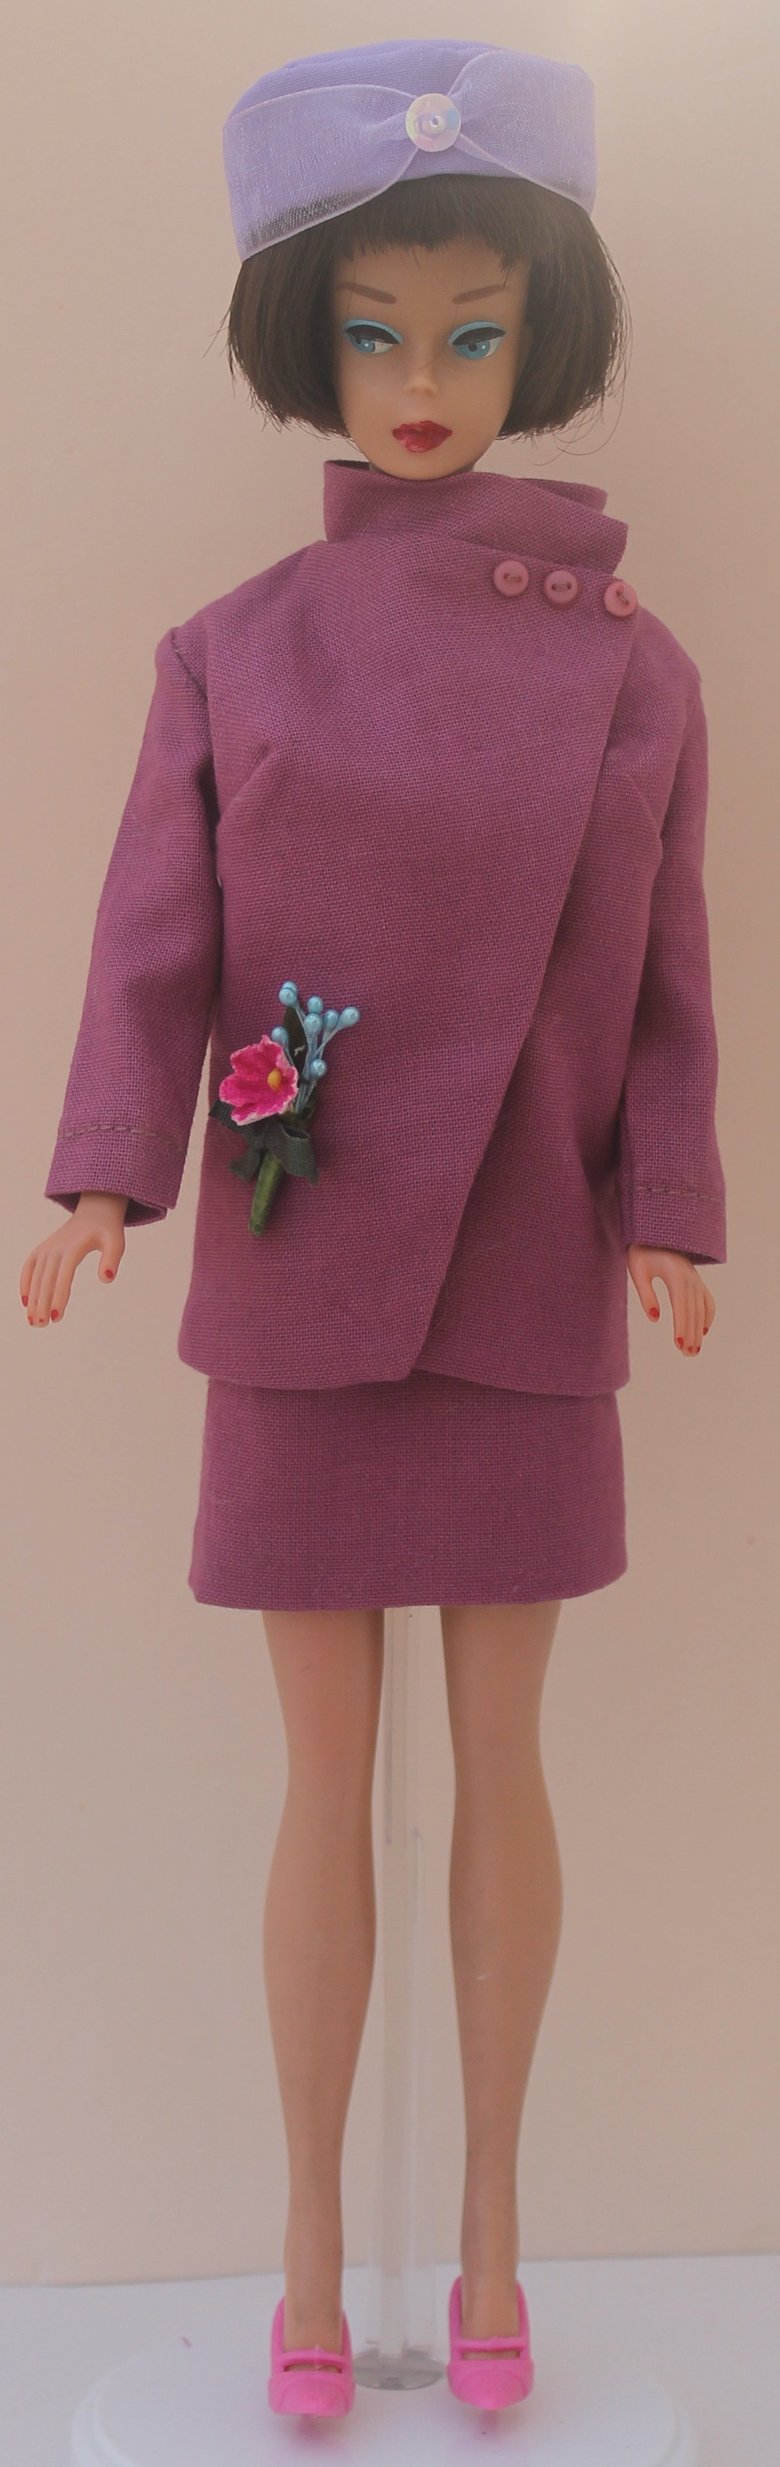 Image of Barbie Barbie - Rare Japan Reproduction - Mauve Suit with Hat